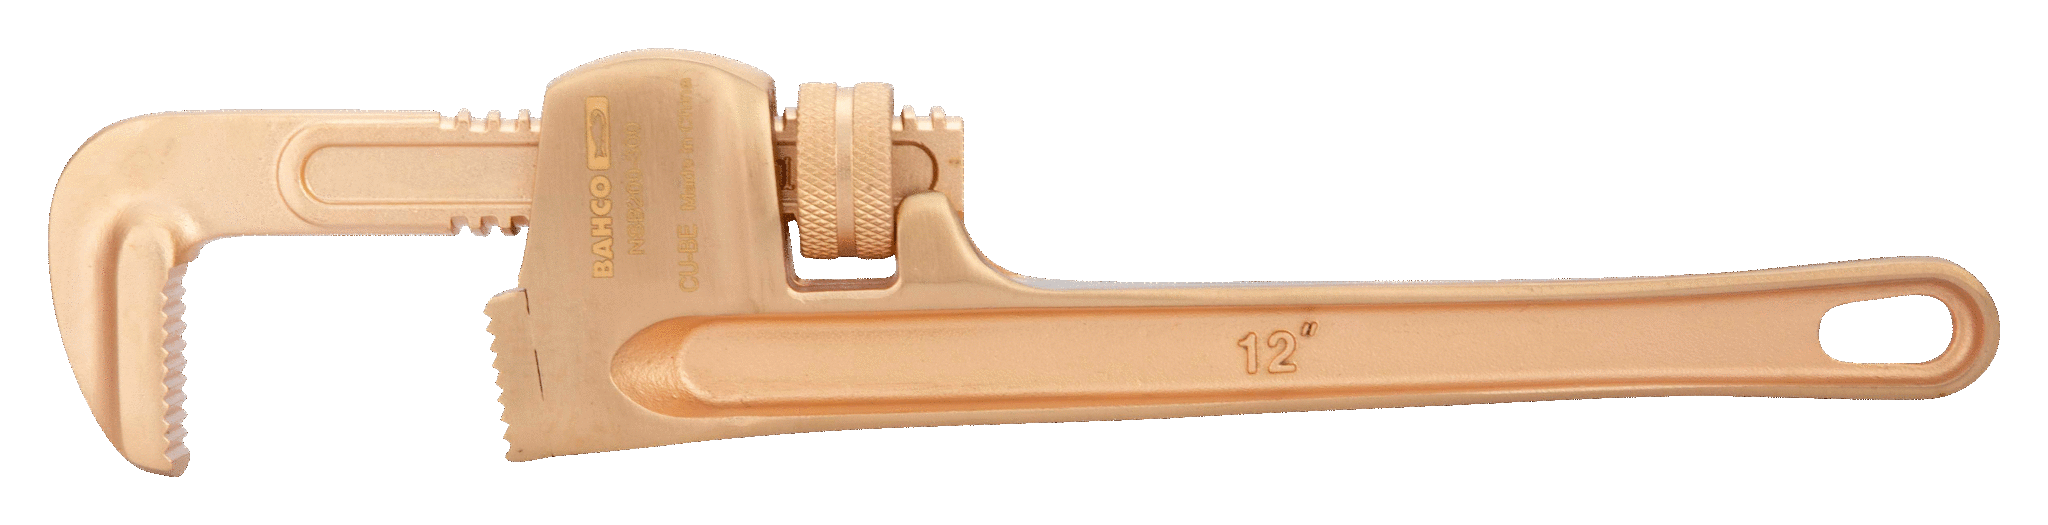 картинка Трубный ключ BAHCO NSB200-250 от магазина "Элит-инструмент"